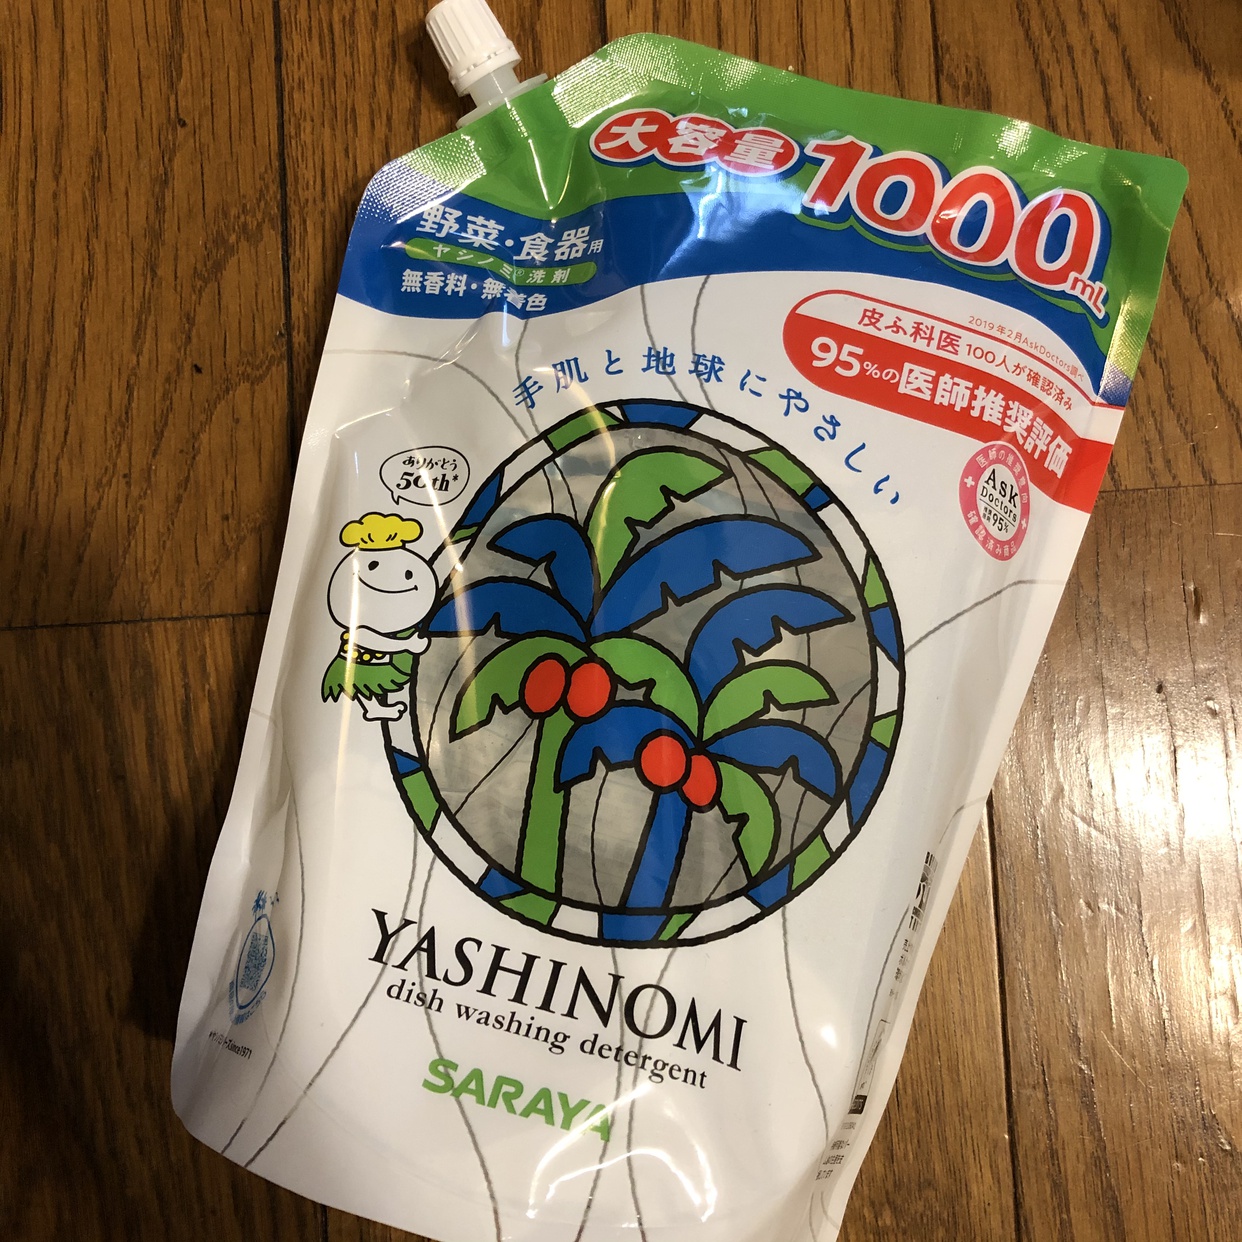 ヤシノミ洗剤(YASHINOMI) 野菜・食器用の良い点・メリットに関するhappy☆fridayさんの口コミ画像1